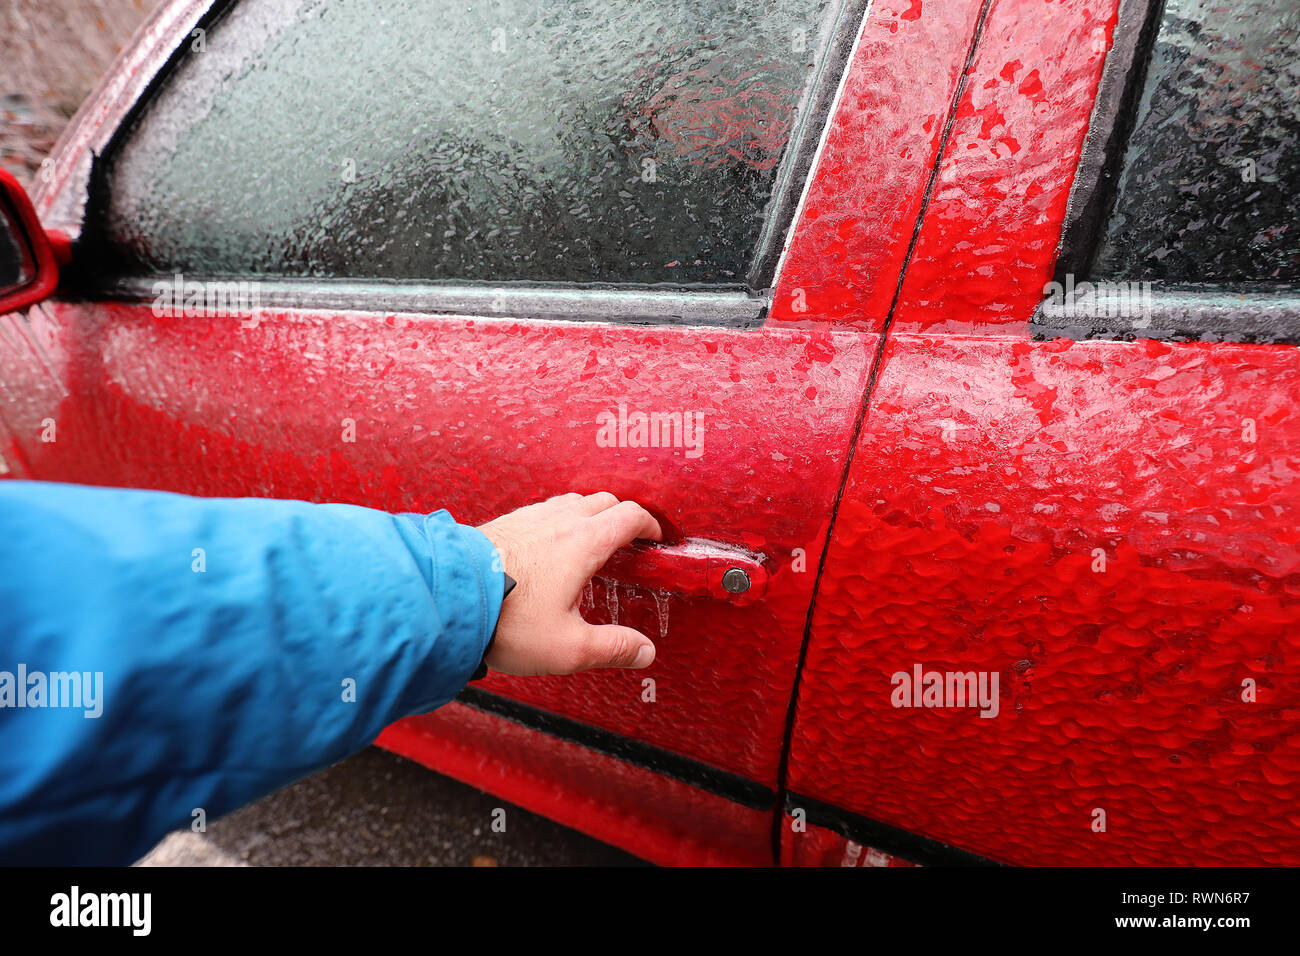 Transport, Winter, Wetter, Fahrzeugkonzept. Hand auf's Auto griff im Schnee und eisigen Regen im Winter abgedeckt. Blizzard Schneefall Eisregen für Wea Stockfoto